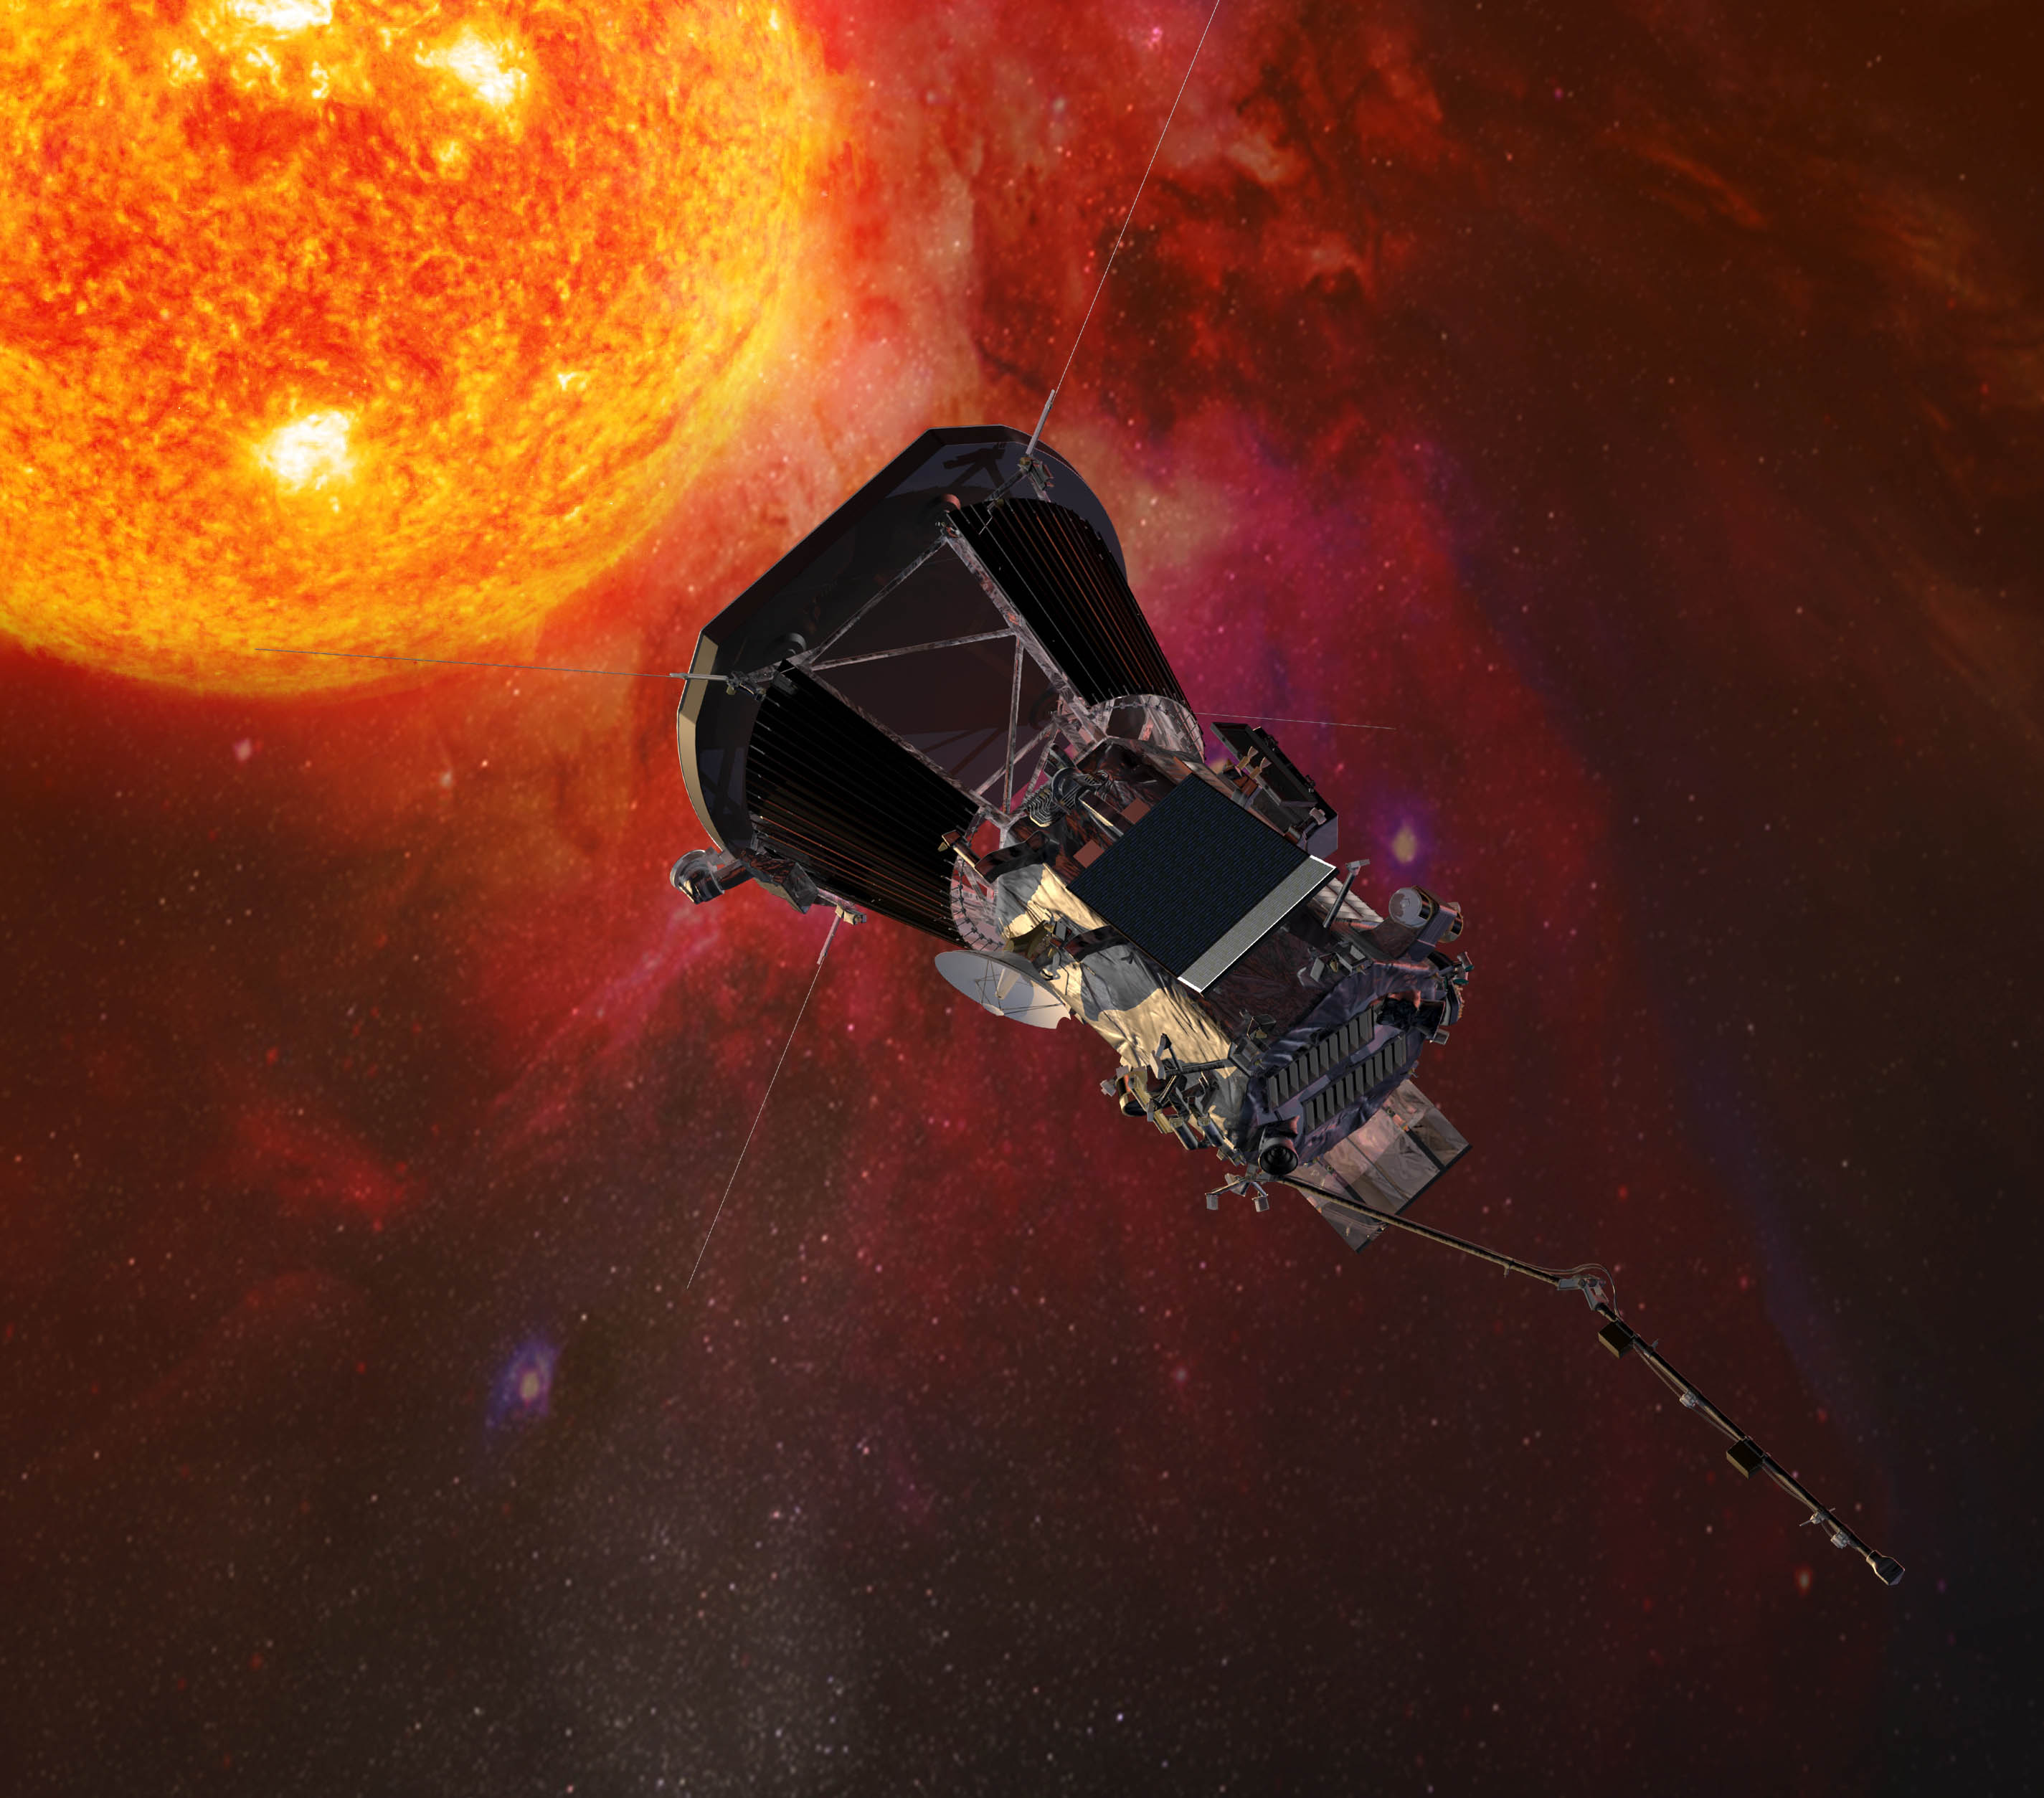 Sonda solar Parker inicia viaje al sol; la meta será saber por qué la atmósfera solar es tan caliente